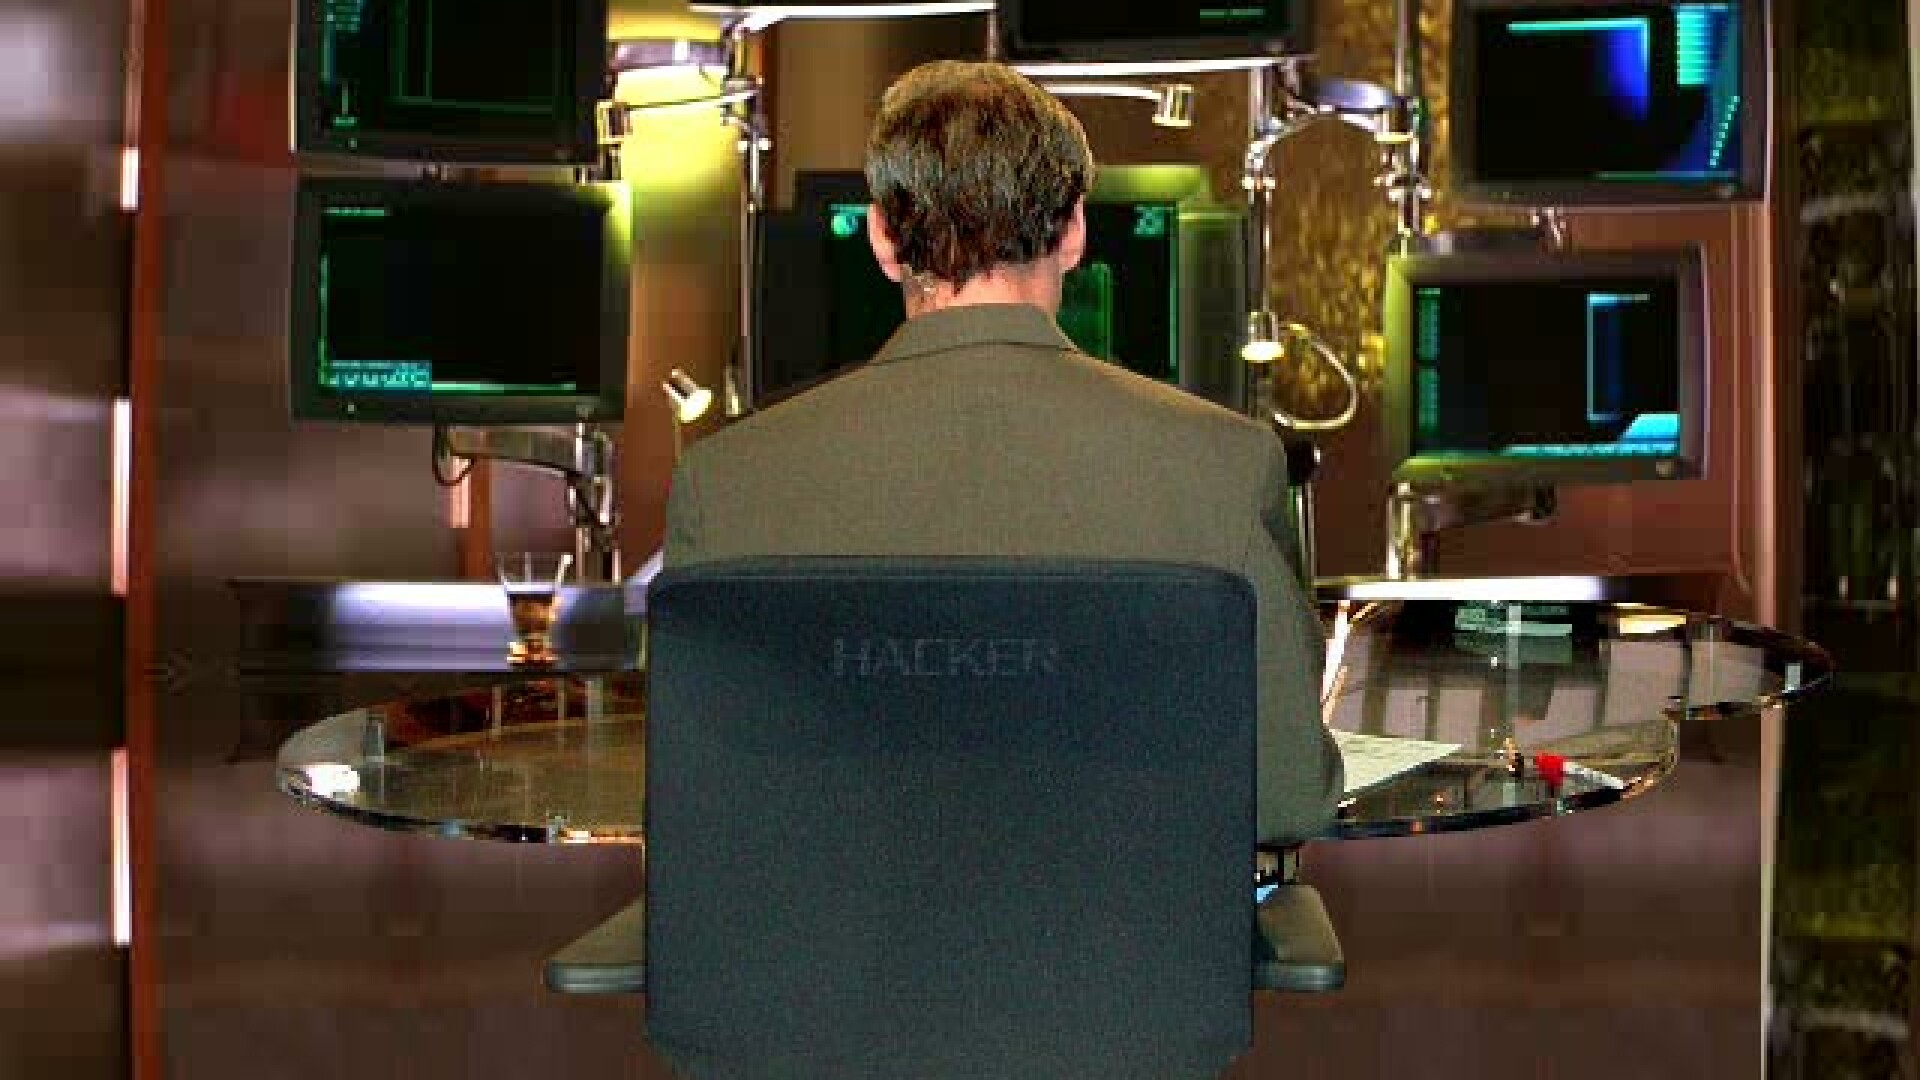 Hackerii se razbuna! Au intrat in calculatorul lui Obama